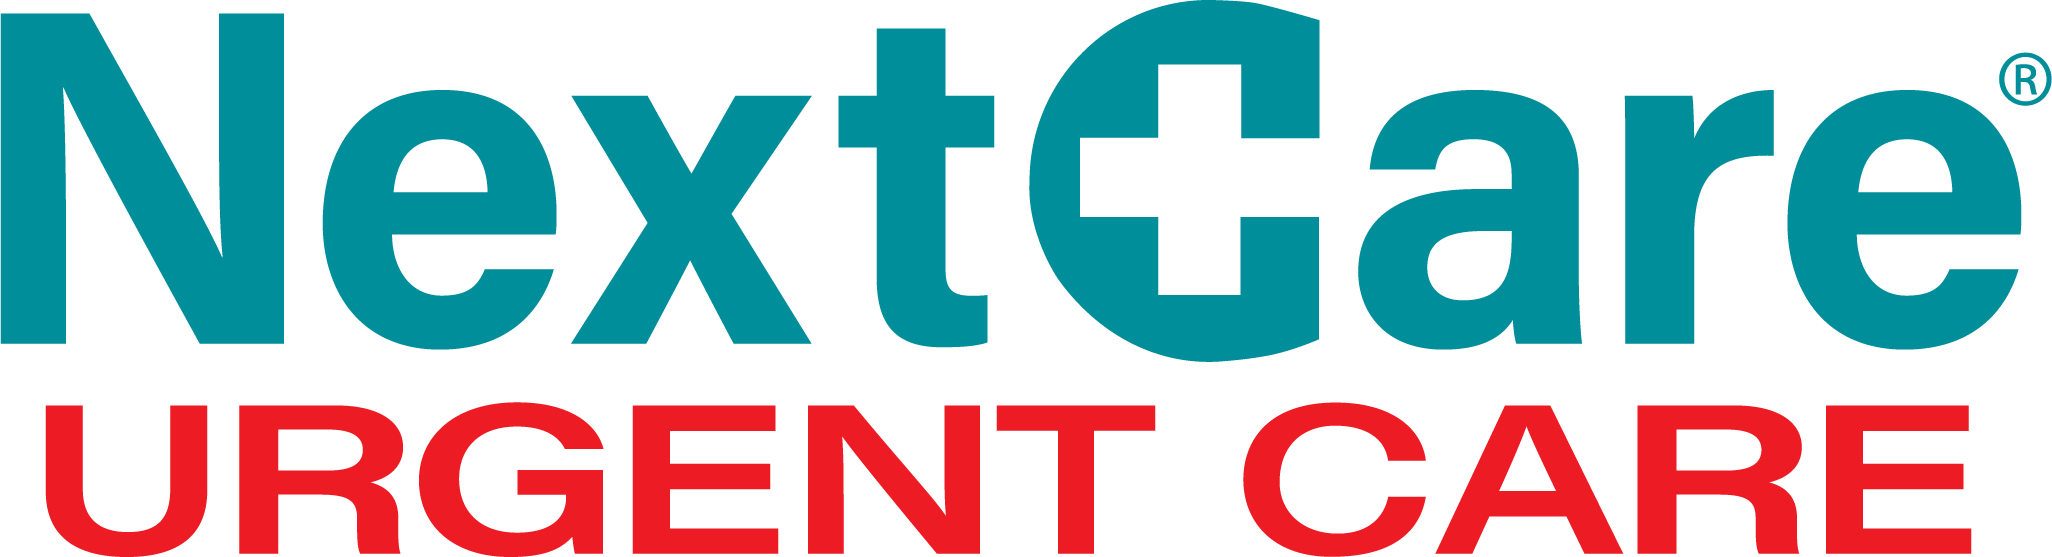 NextCare Urgent Care - Menaul Logo